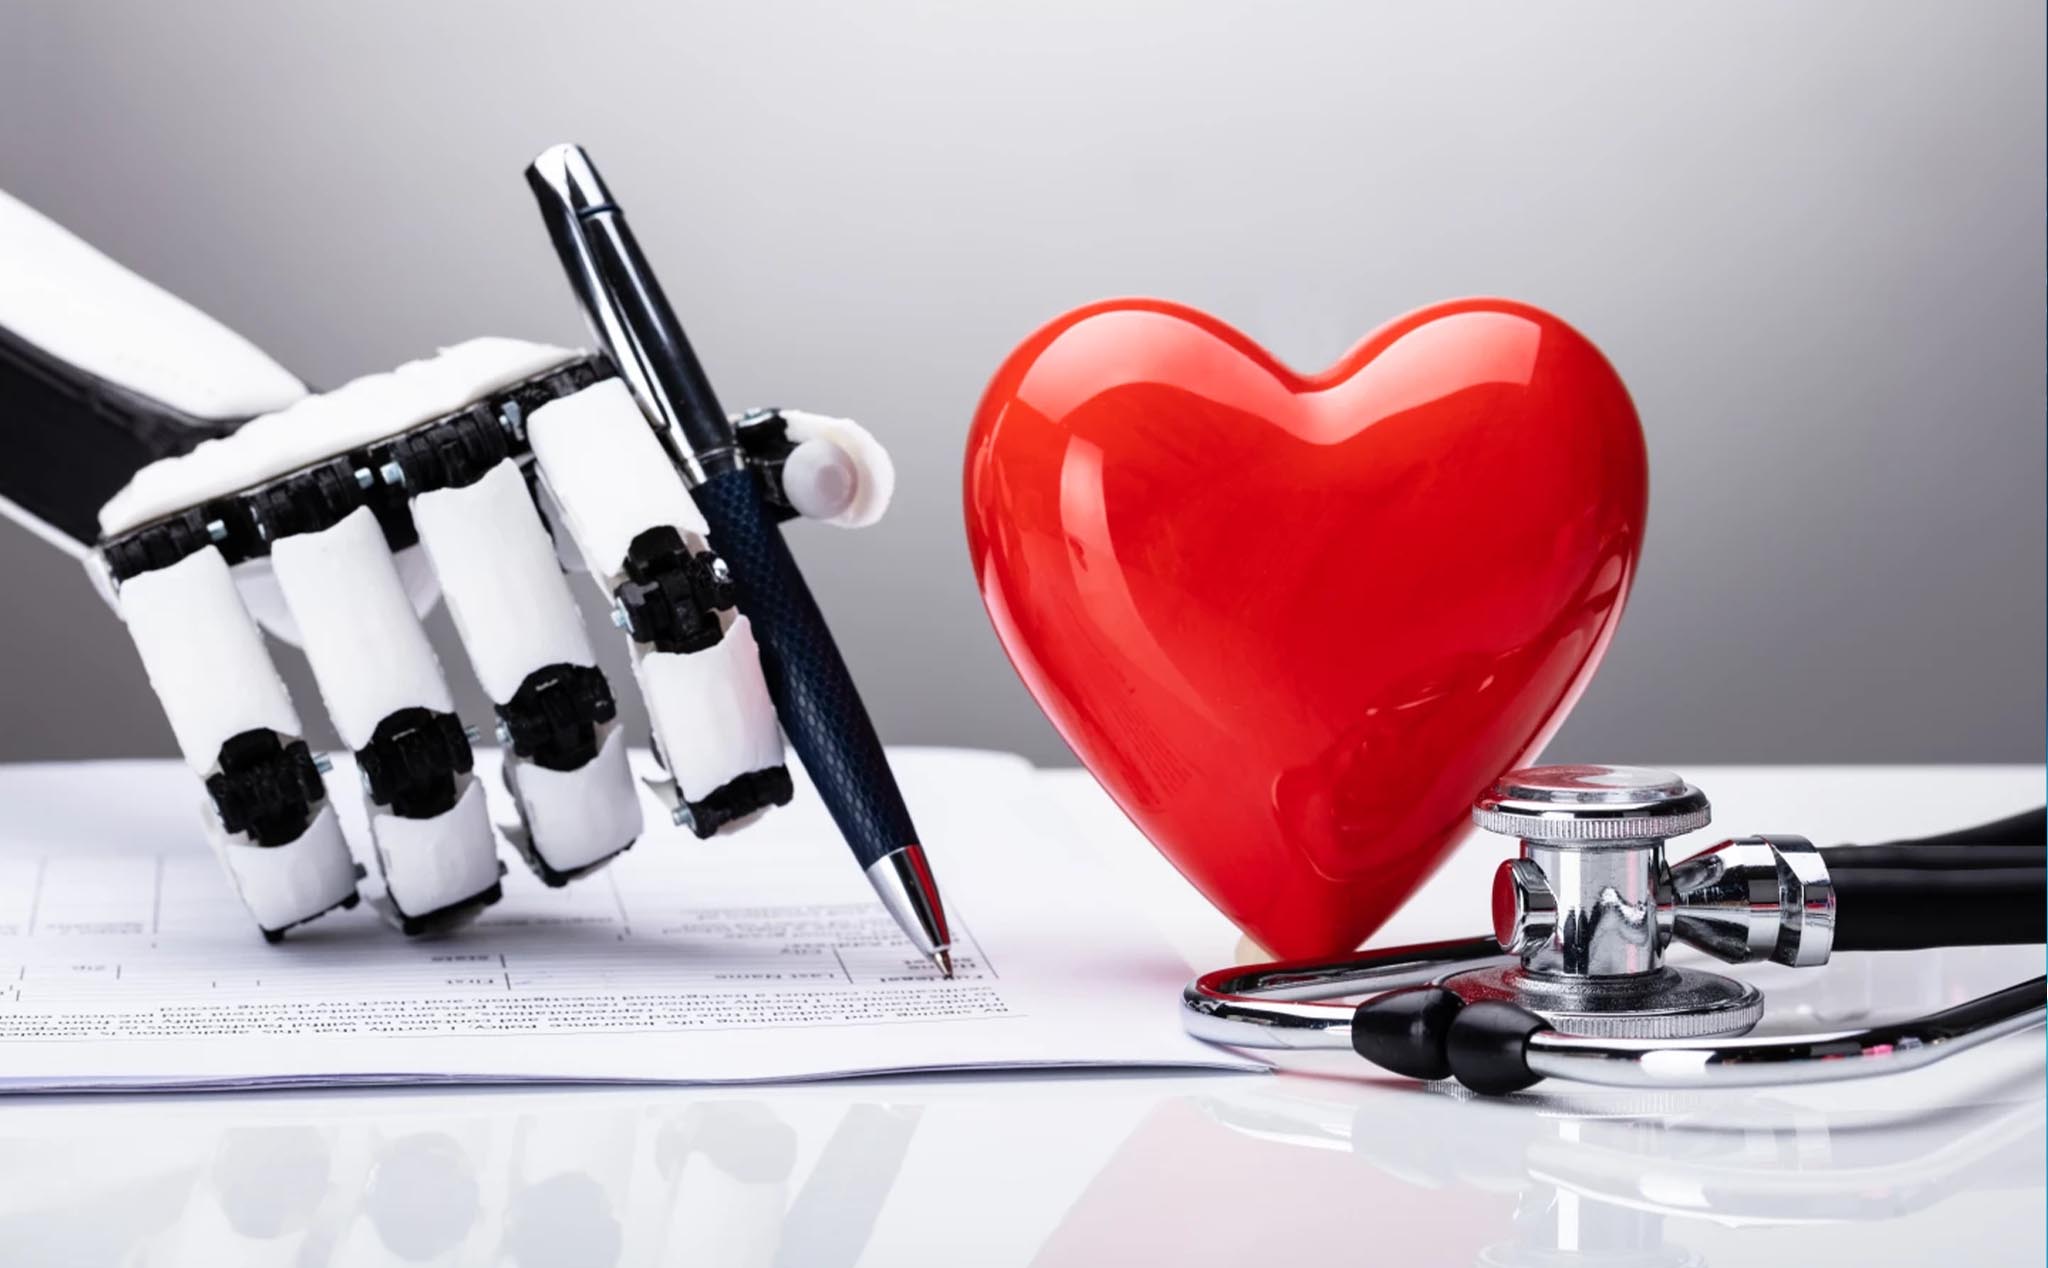 Thuật toán trí thông minh nhân tạo có thể dự đoán chính xác nguy cơ đau tim trong vòng năm năm